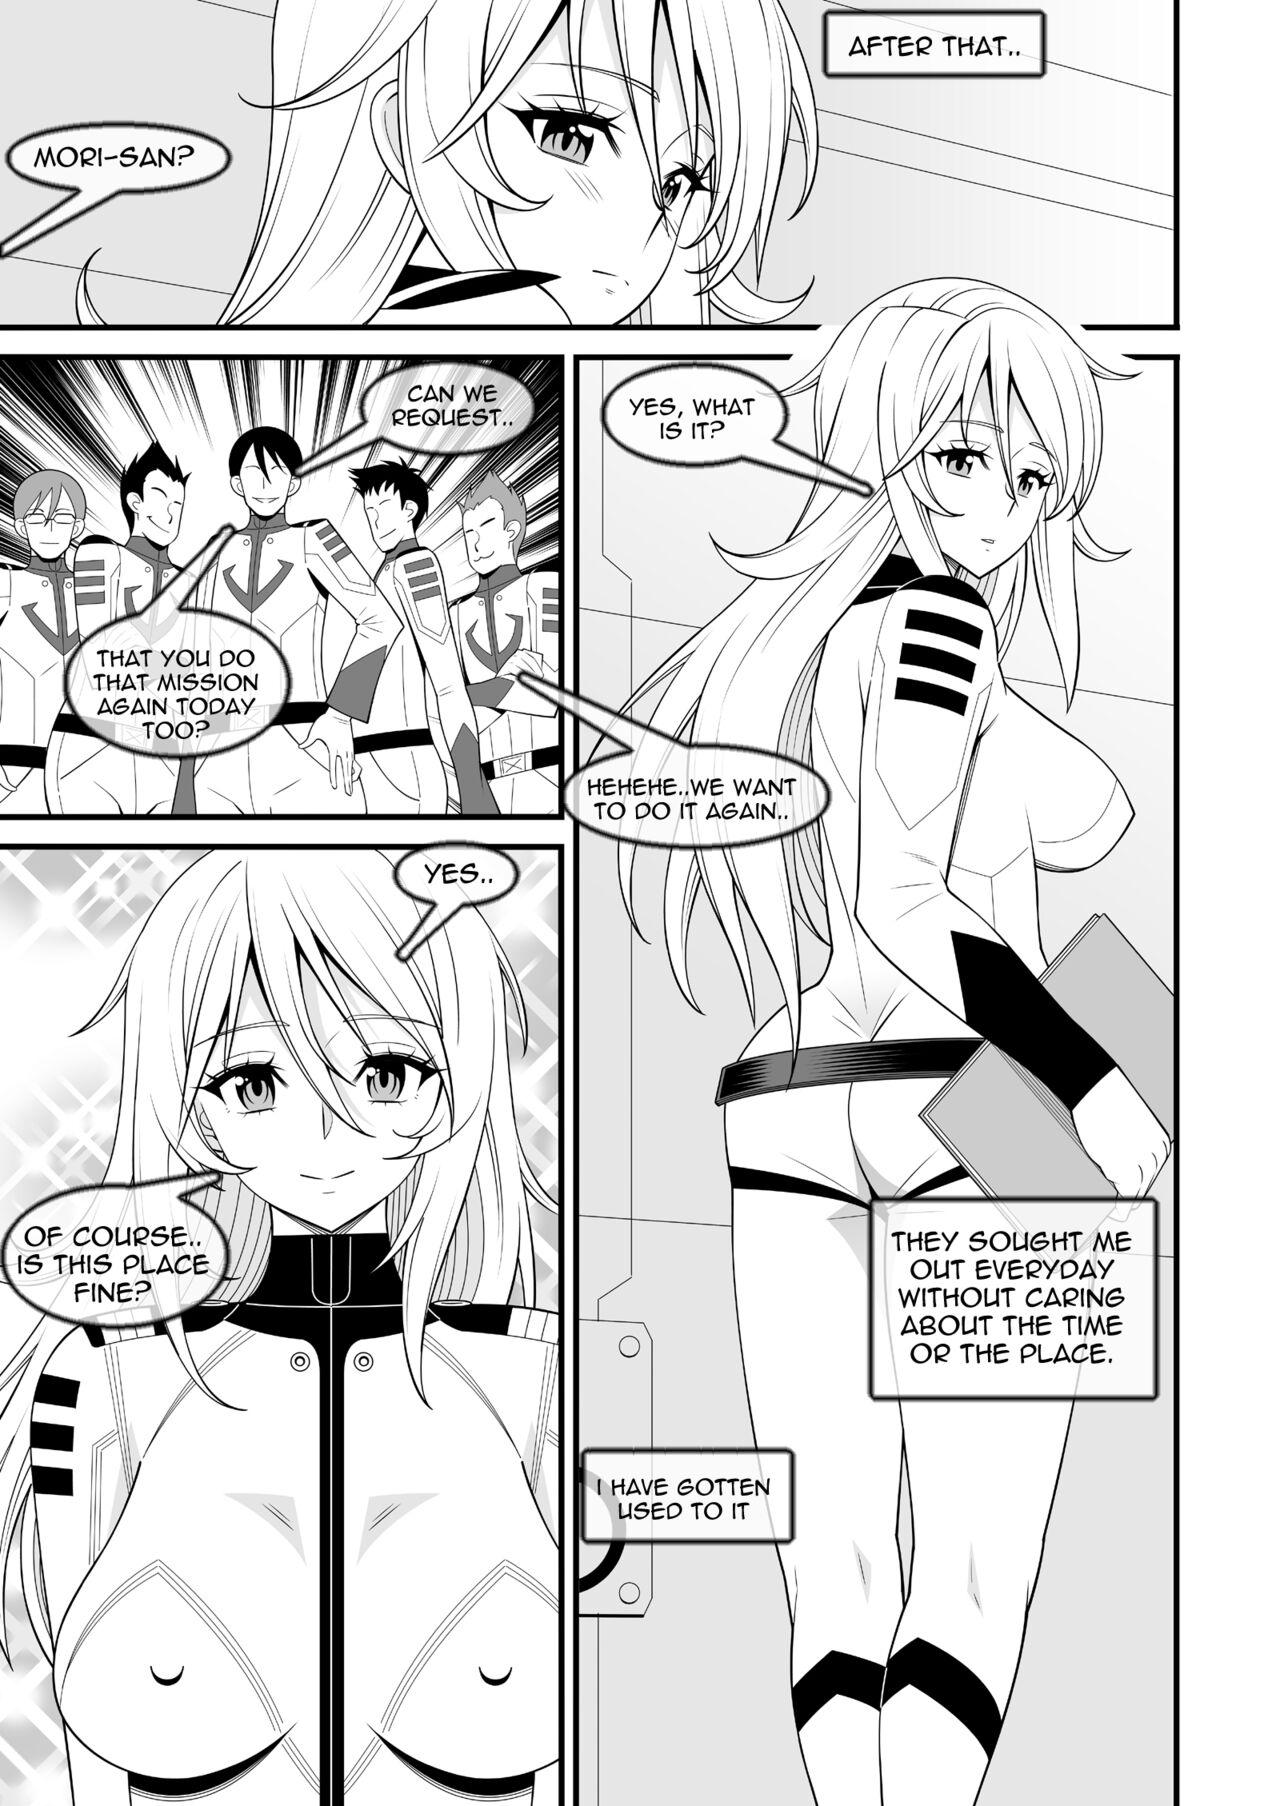 Housewife Yamato Nadeshiko | Yamato's Beauty - Space battleship yamato 2199 Interacial - Page 12